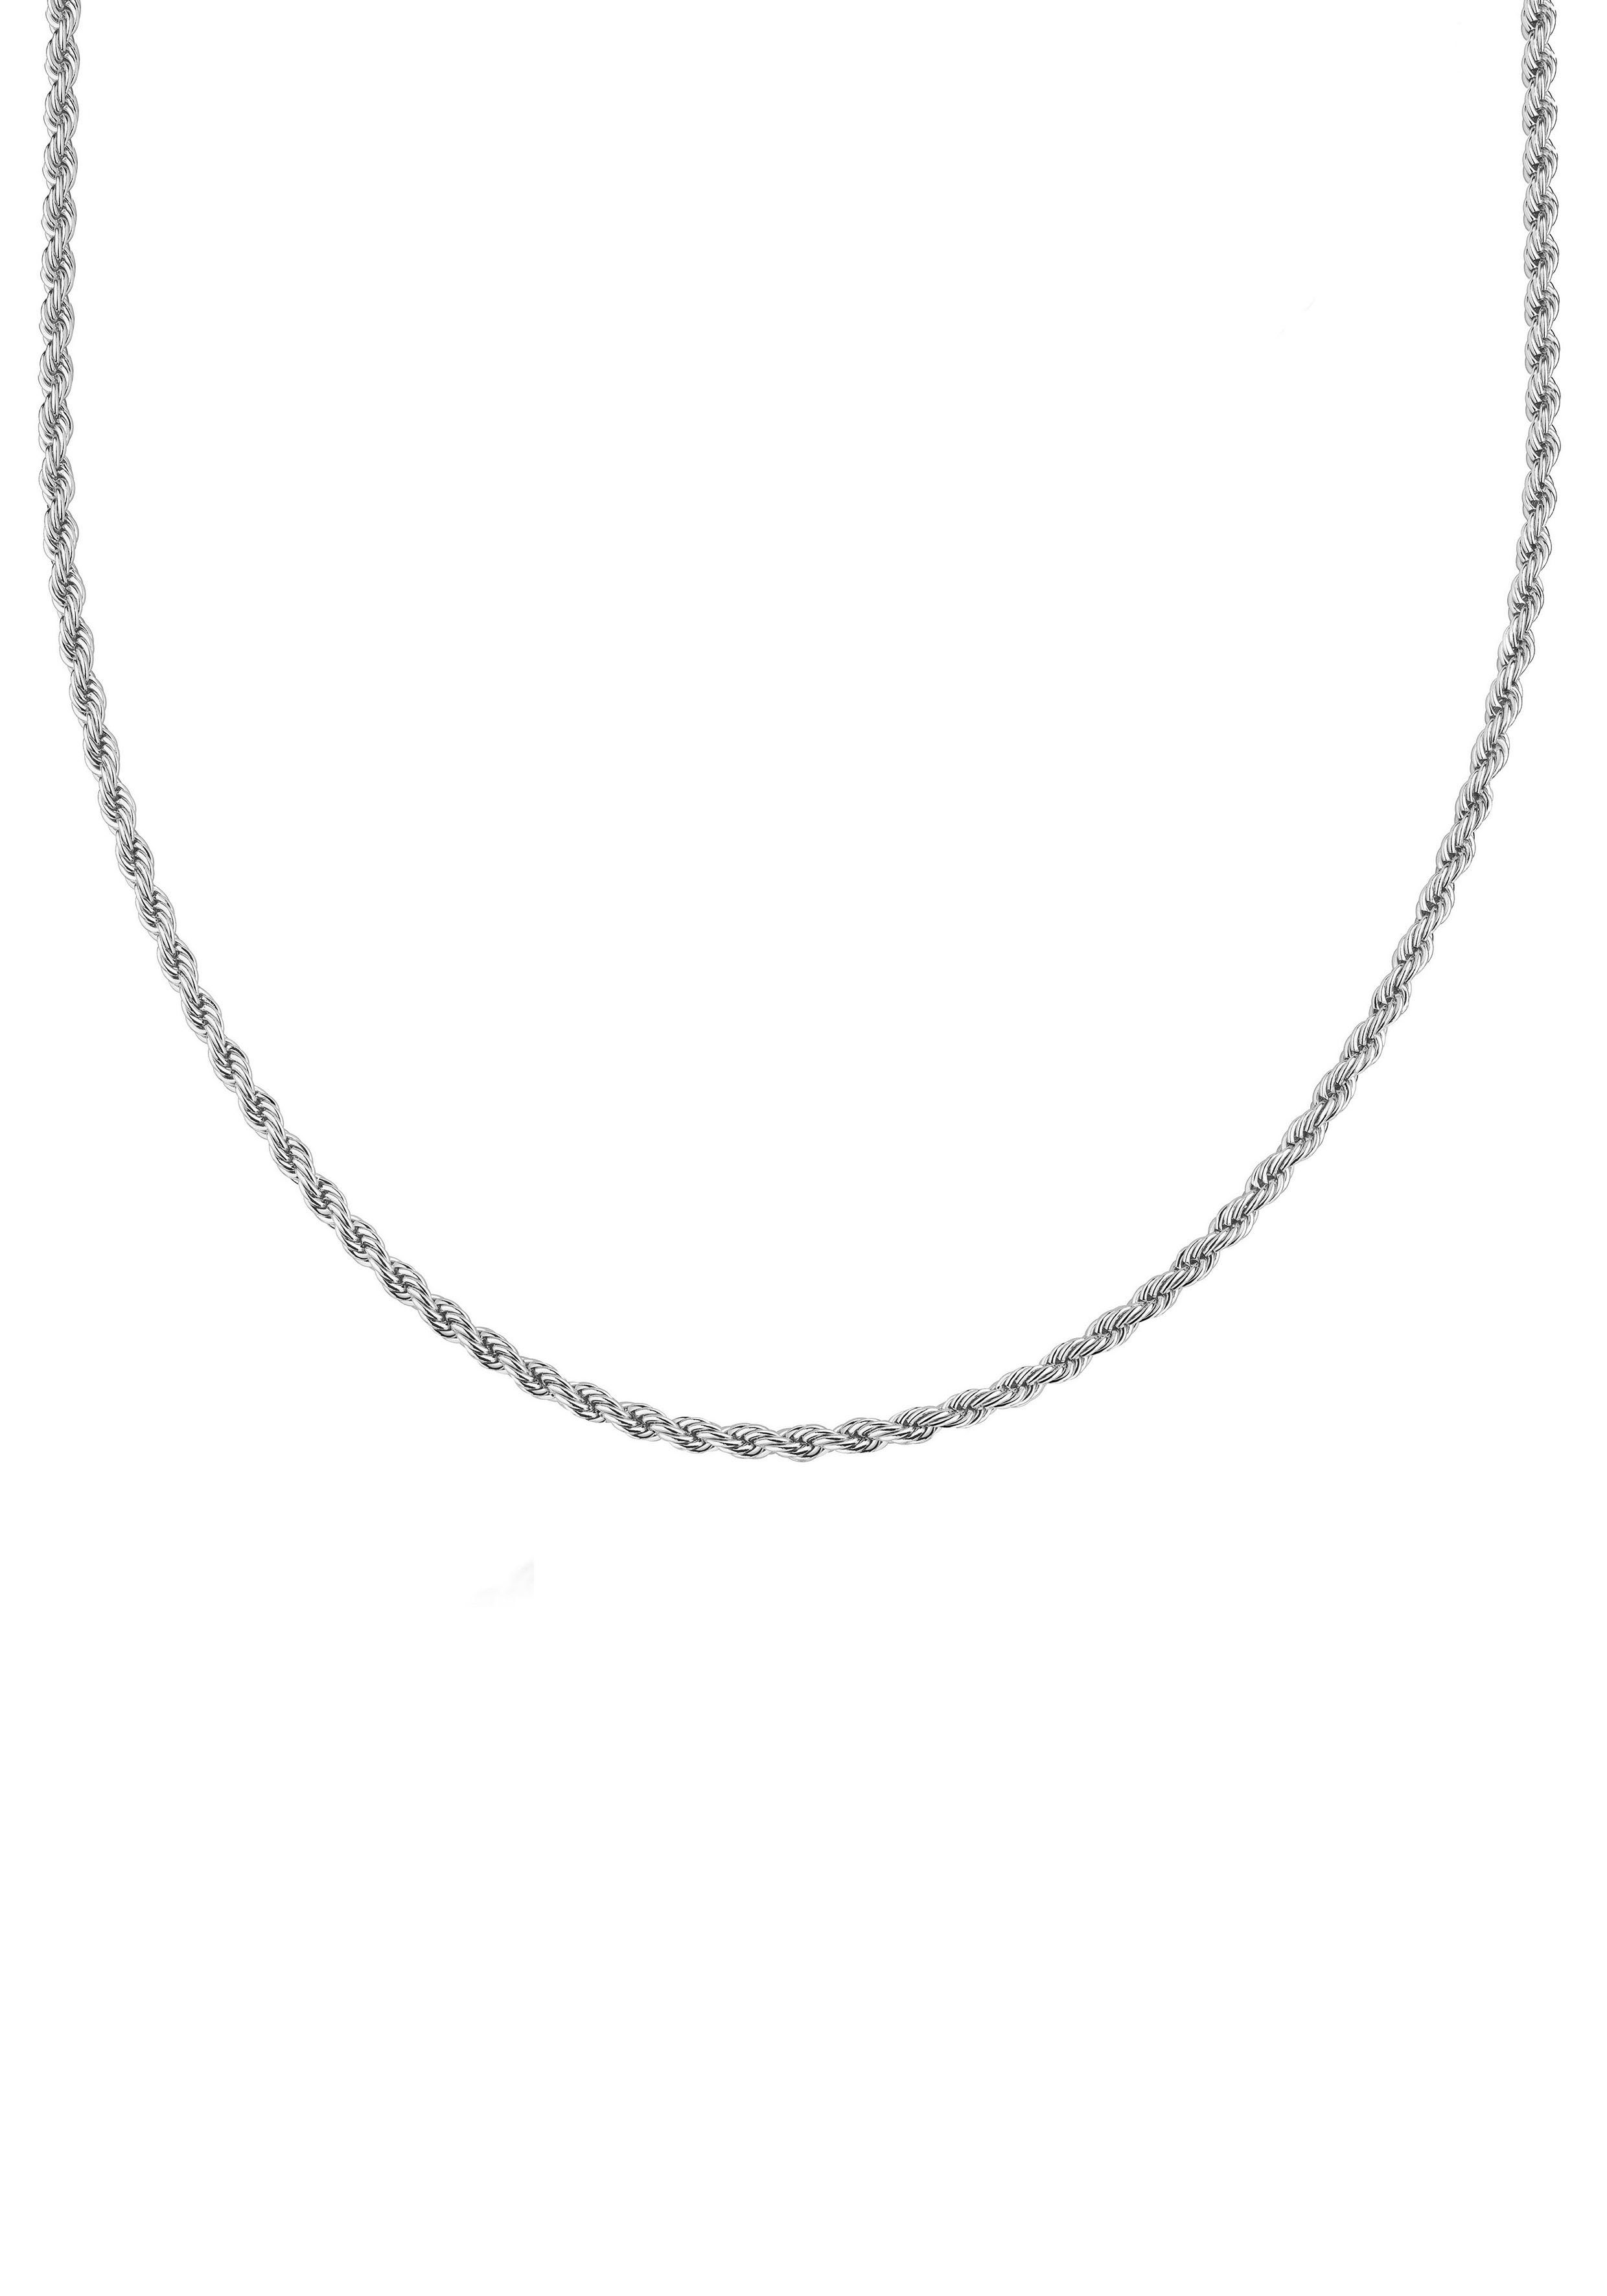 Firetti Kette ohne Anhänger Schmuck Geschenk Silber 925 Halsschmuck Halskette Kordelkette, Made in Germany